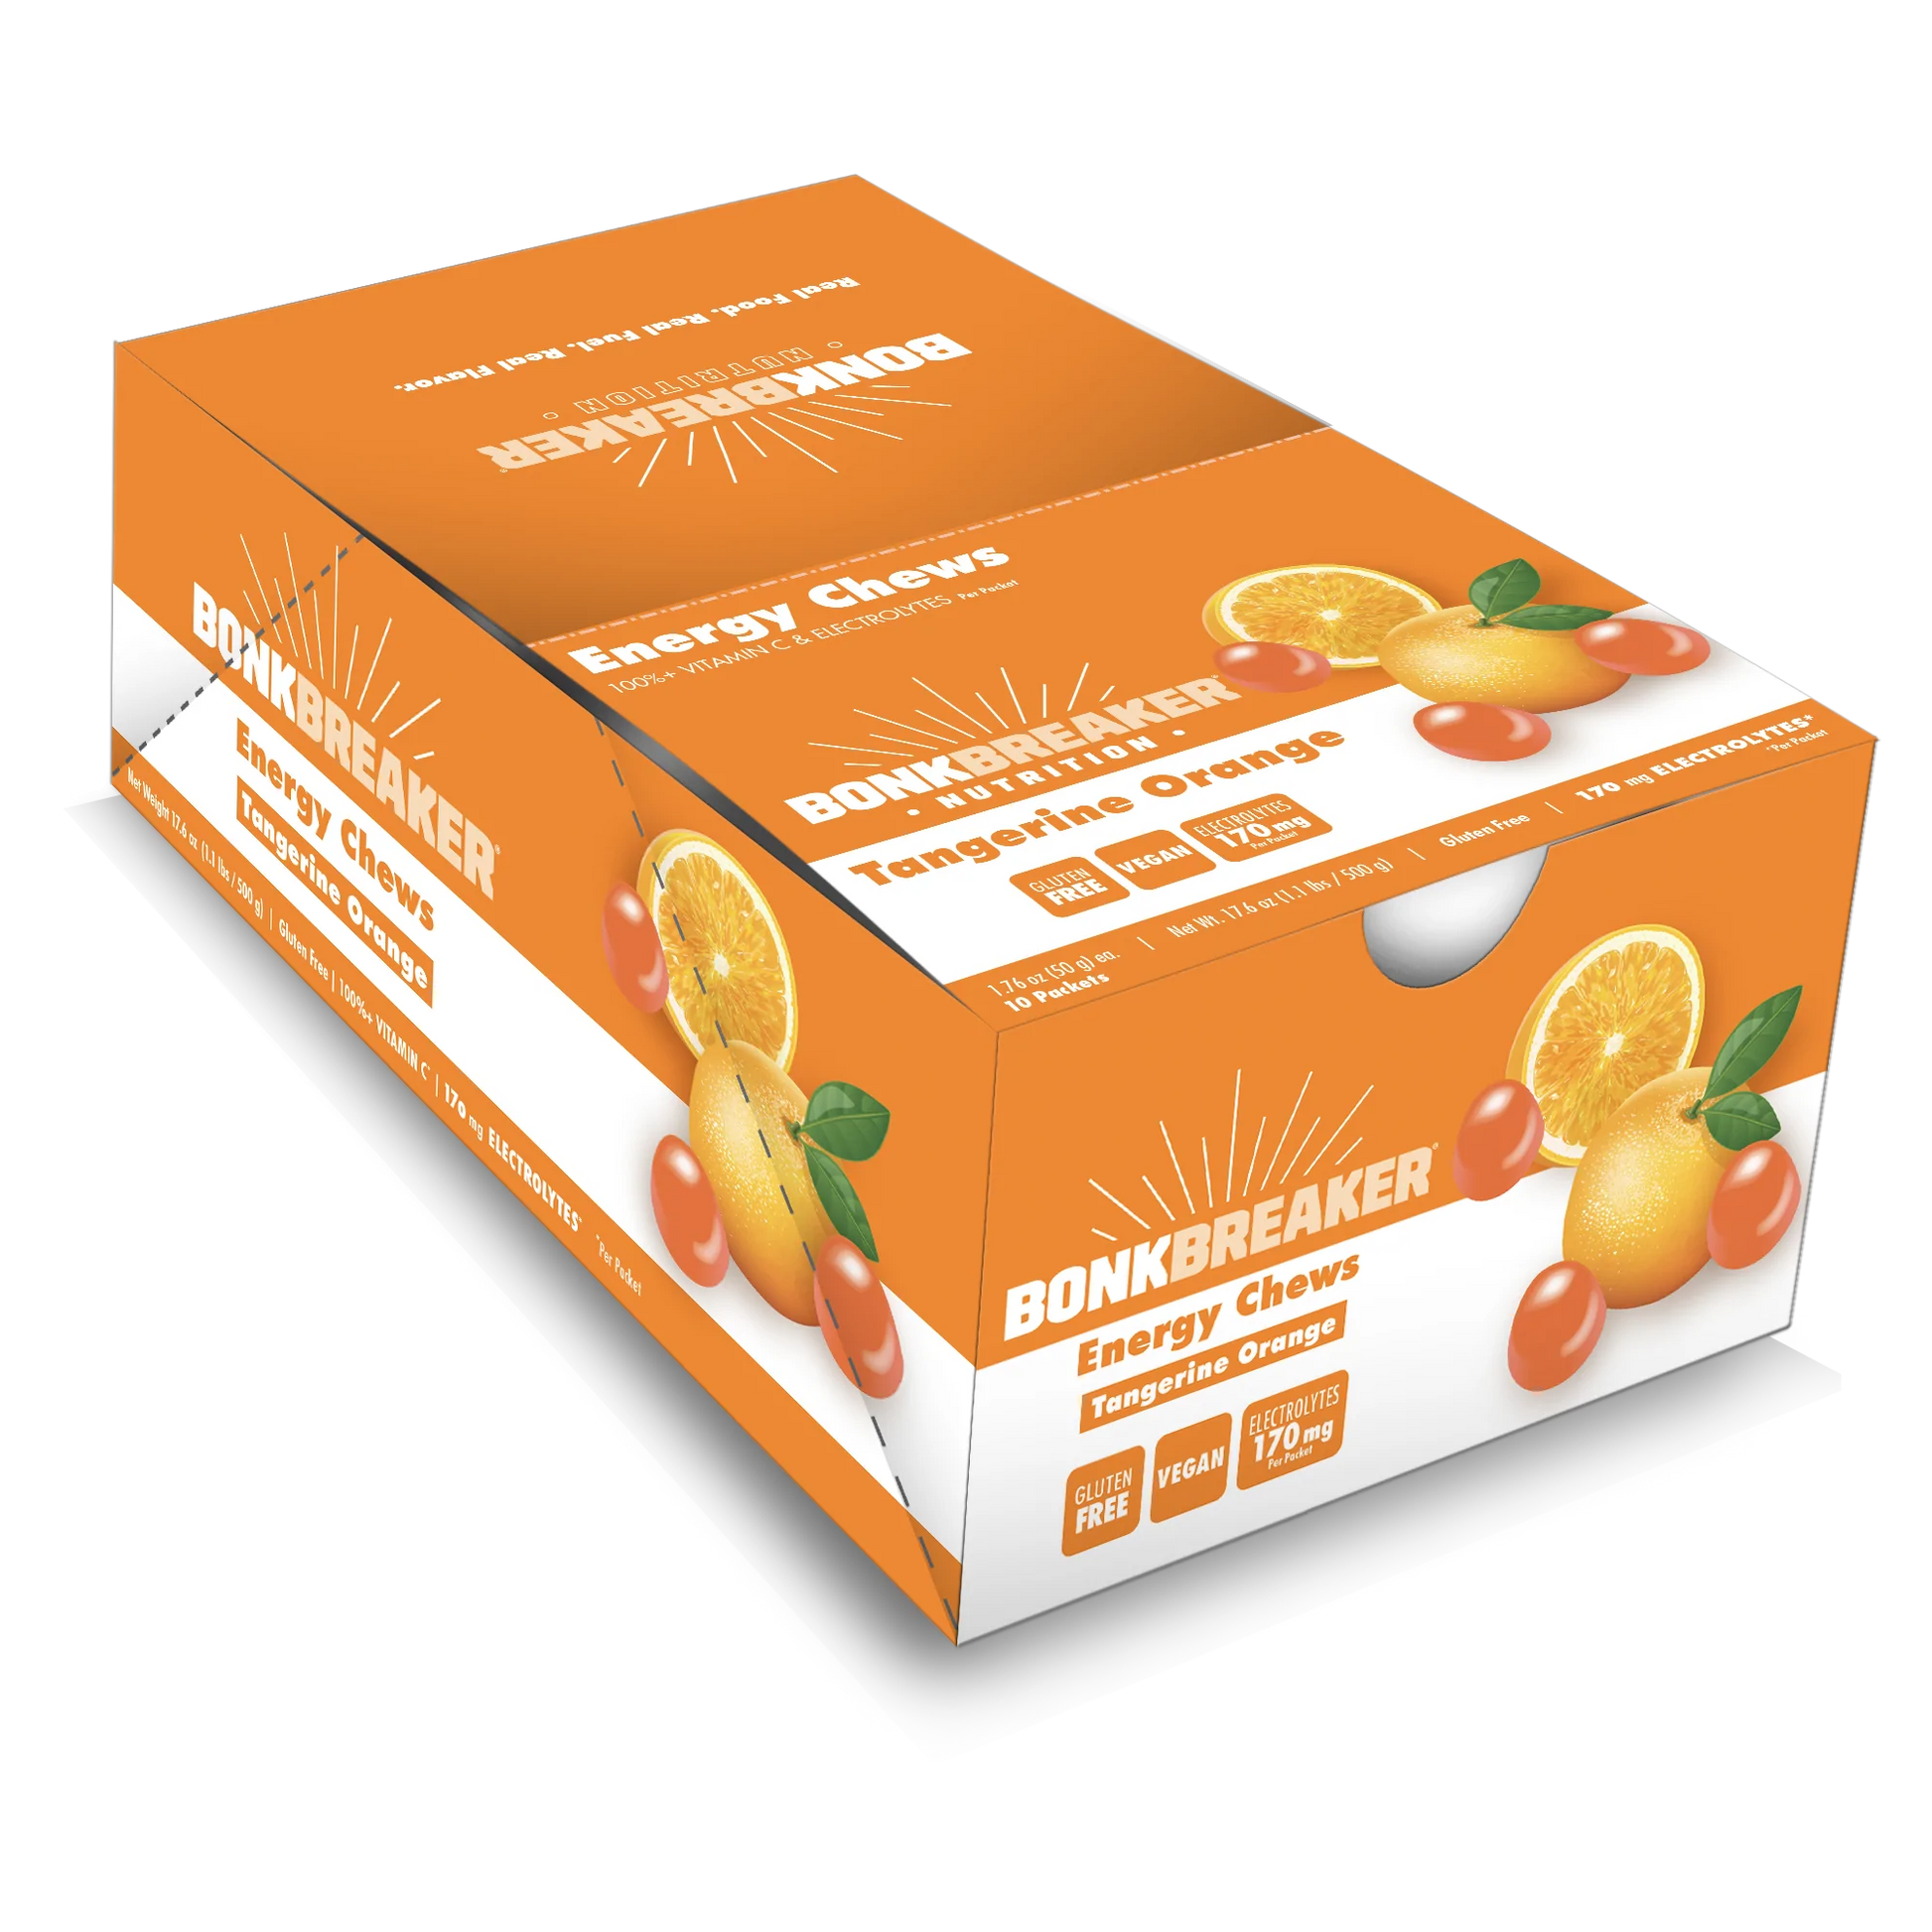 Bonk Breaker Tangerine Orange Energy Chews box of 12 packets